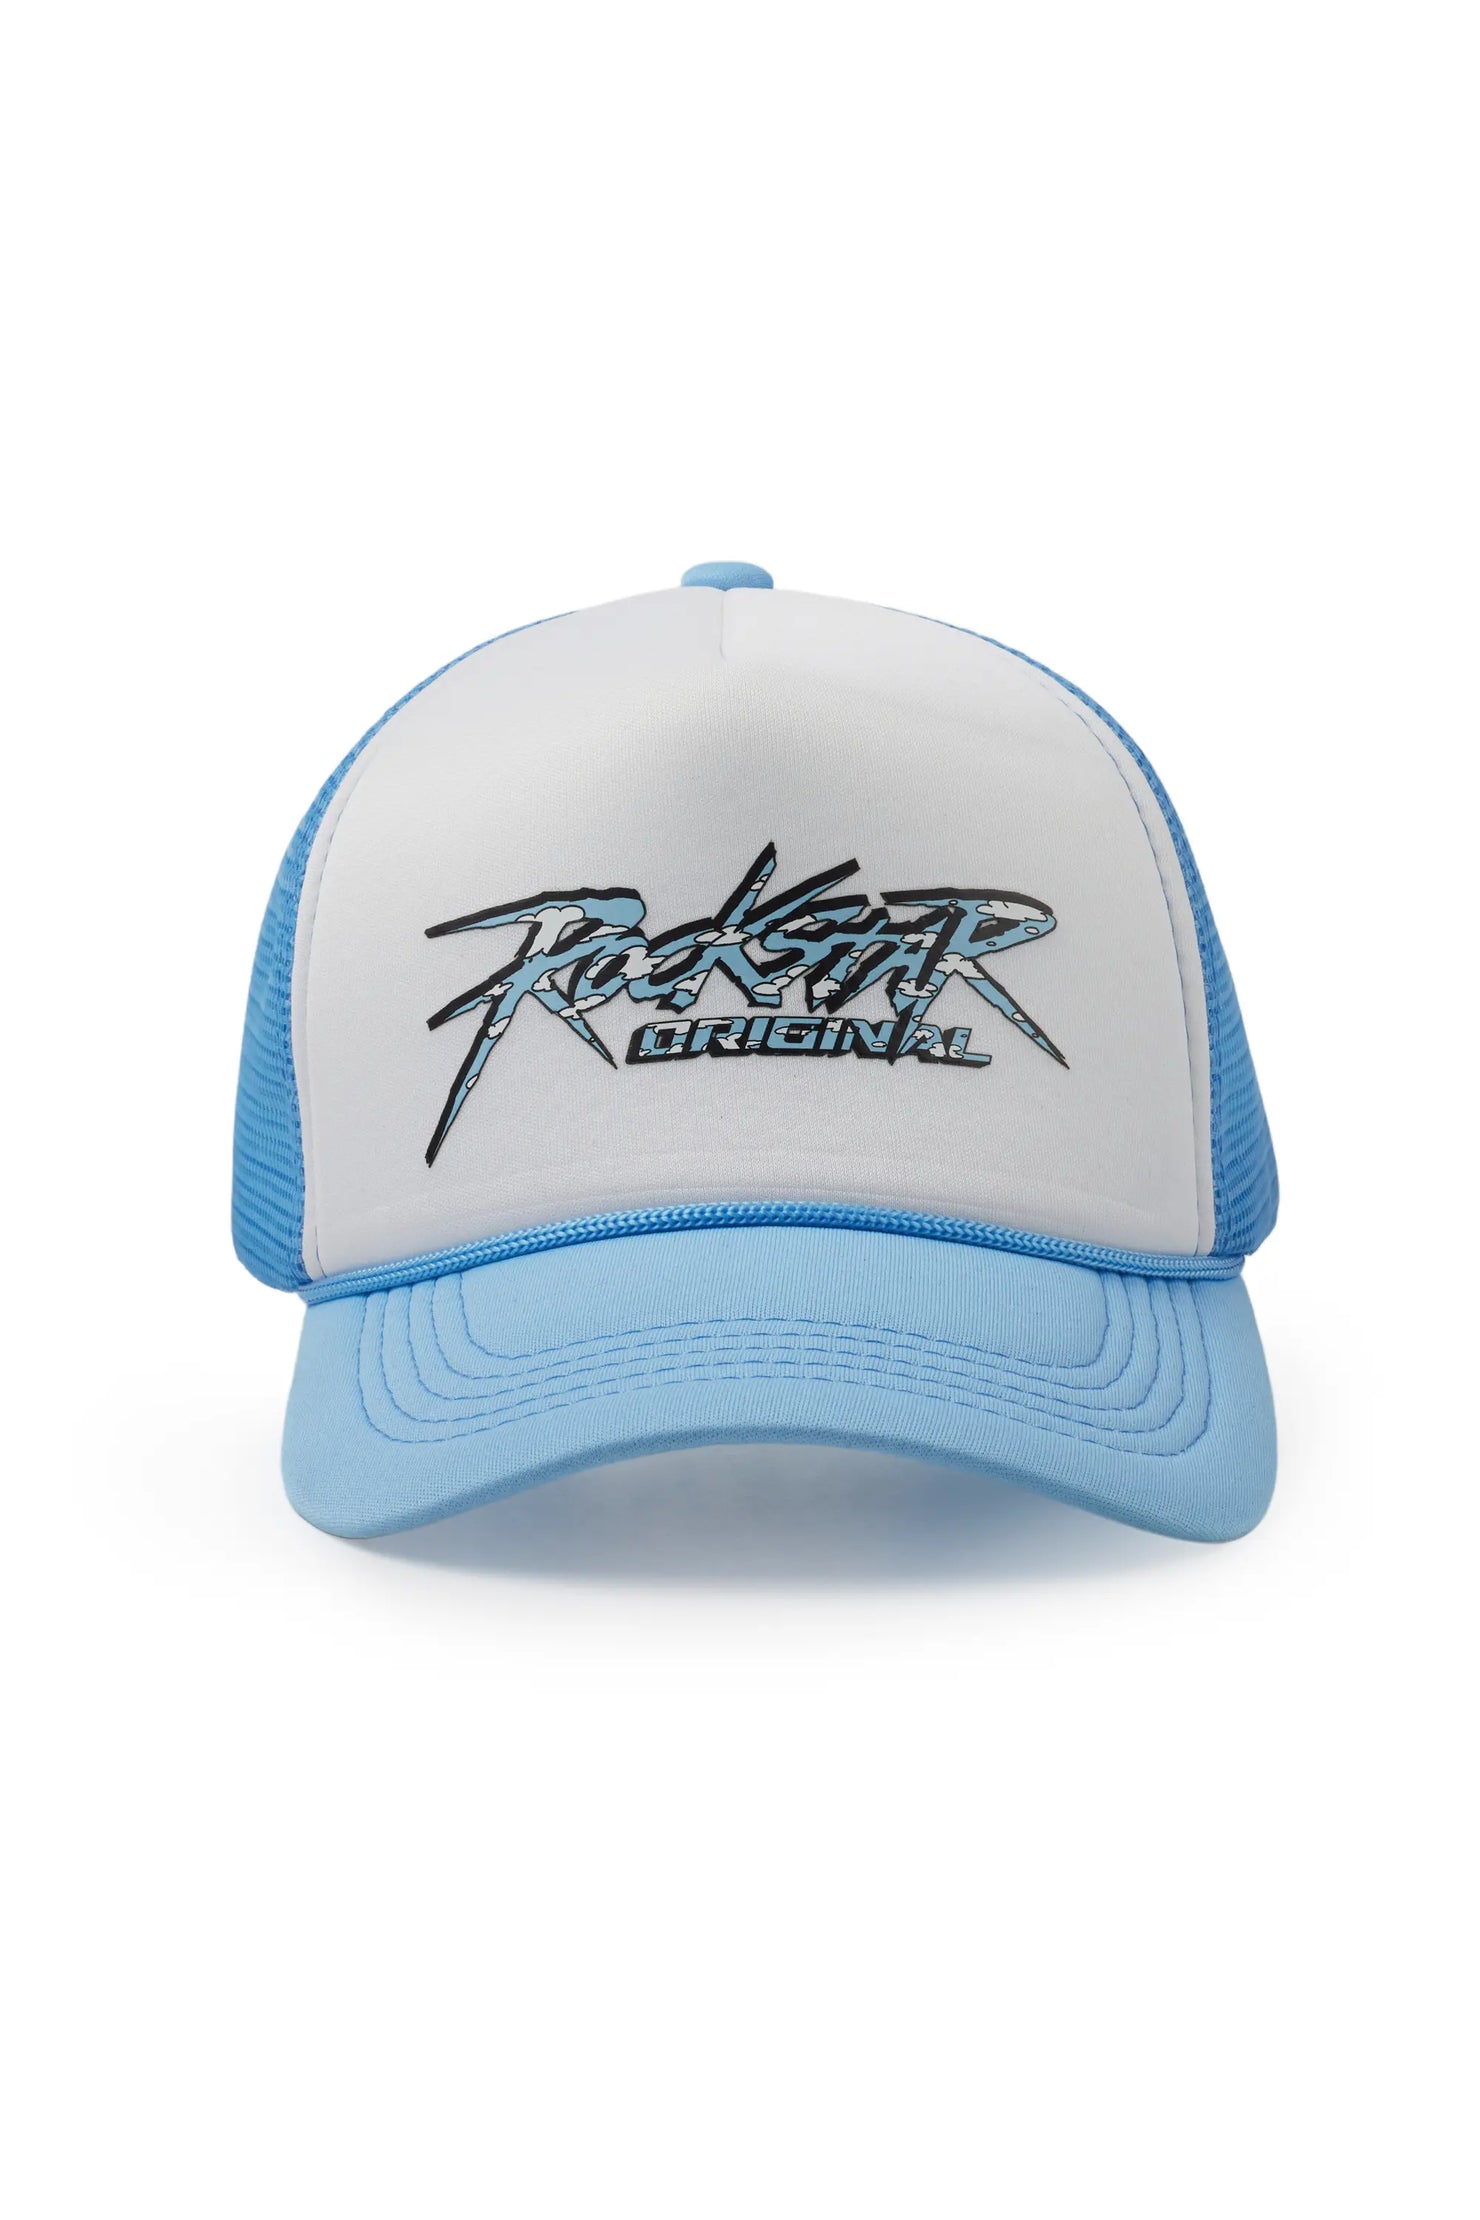 Kalliope White/Blue Trucker Hat